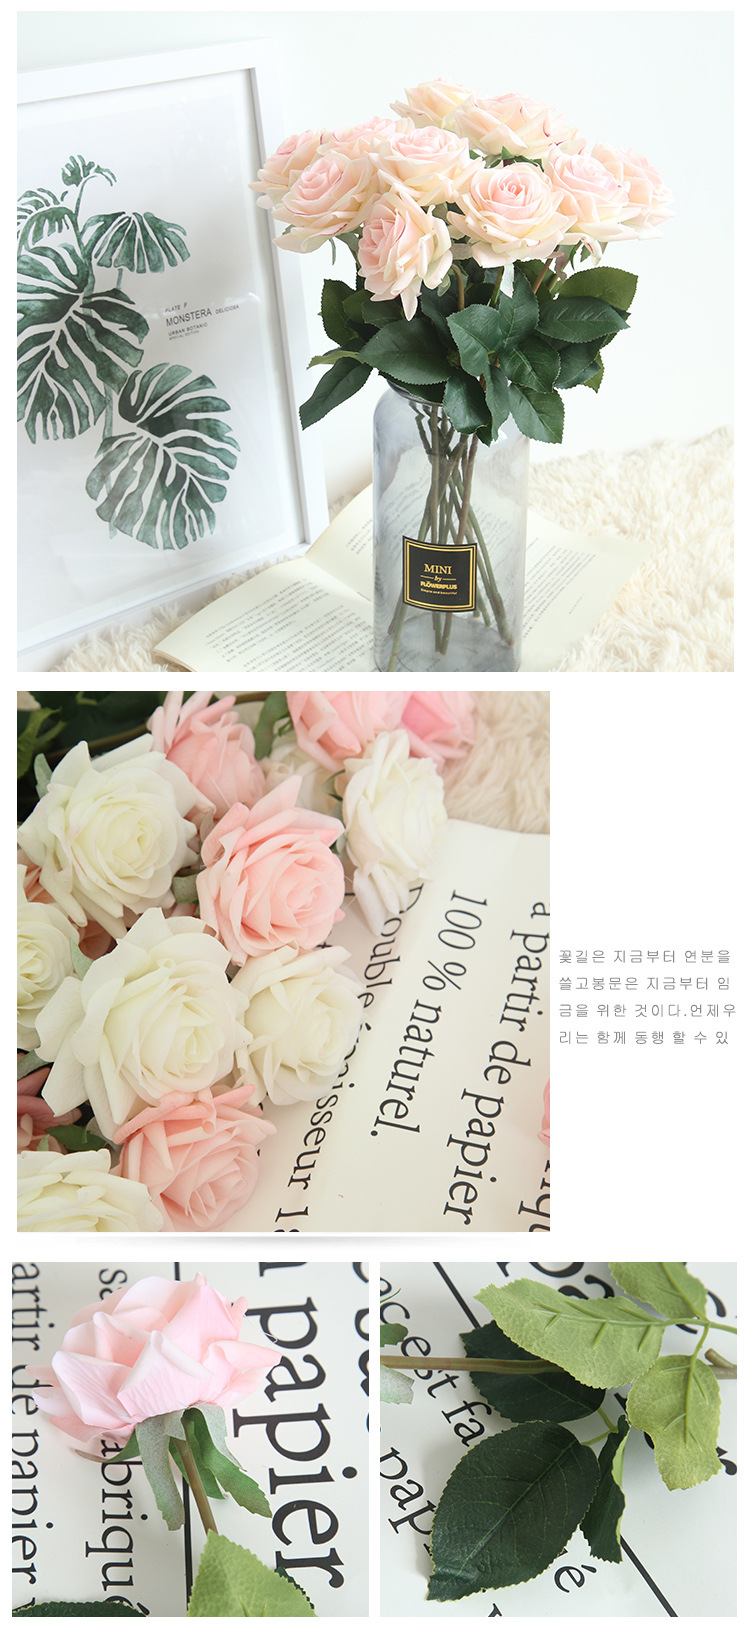 Décor Rose Fleurs Artificielles Fleurs En Soie Floral Latex Real Touch Roses Pour Bouquet De Mariage Saint Valentin Accueil Fête Conception FY4644